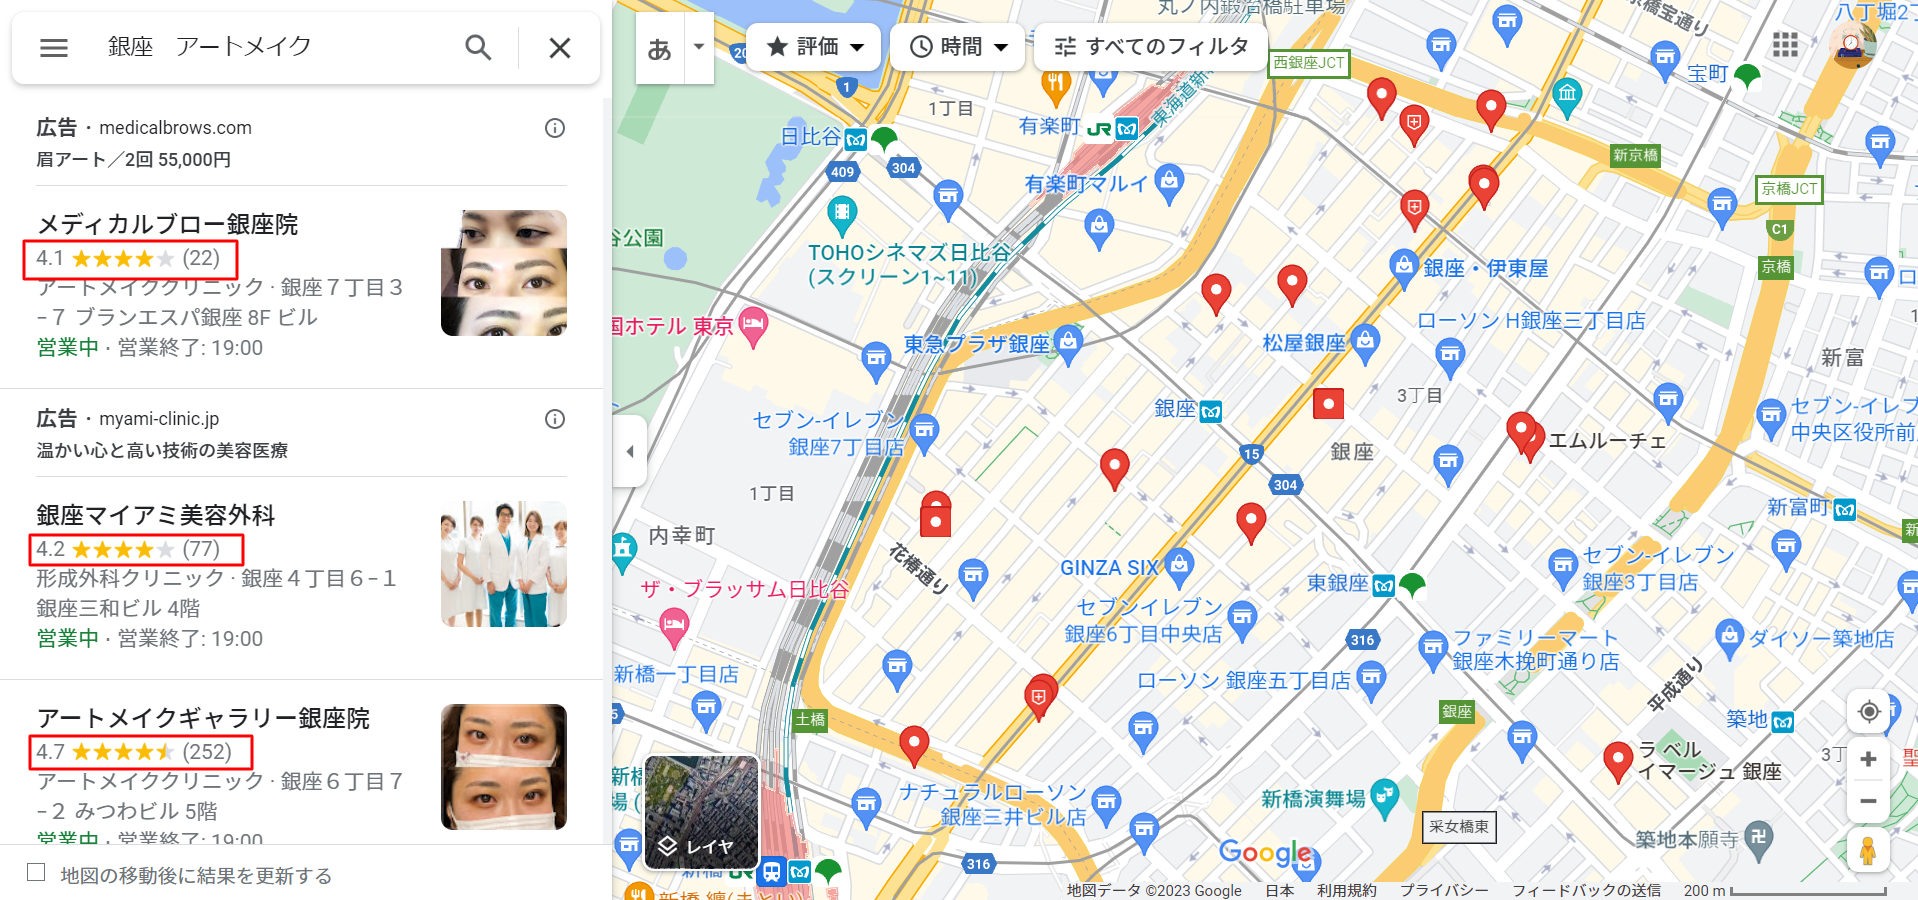 銀座-アートメイク-Google-マップ